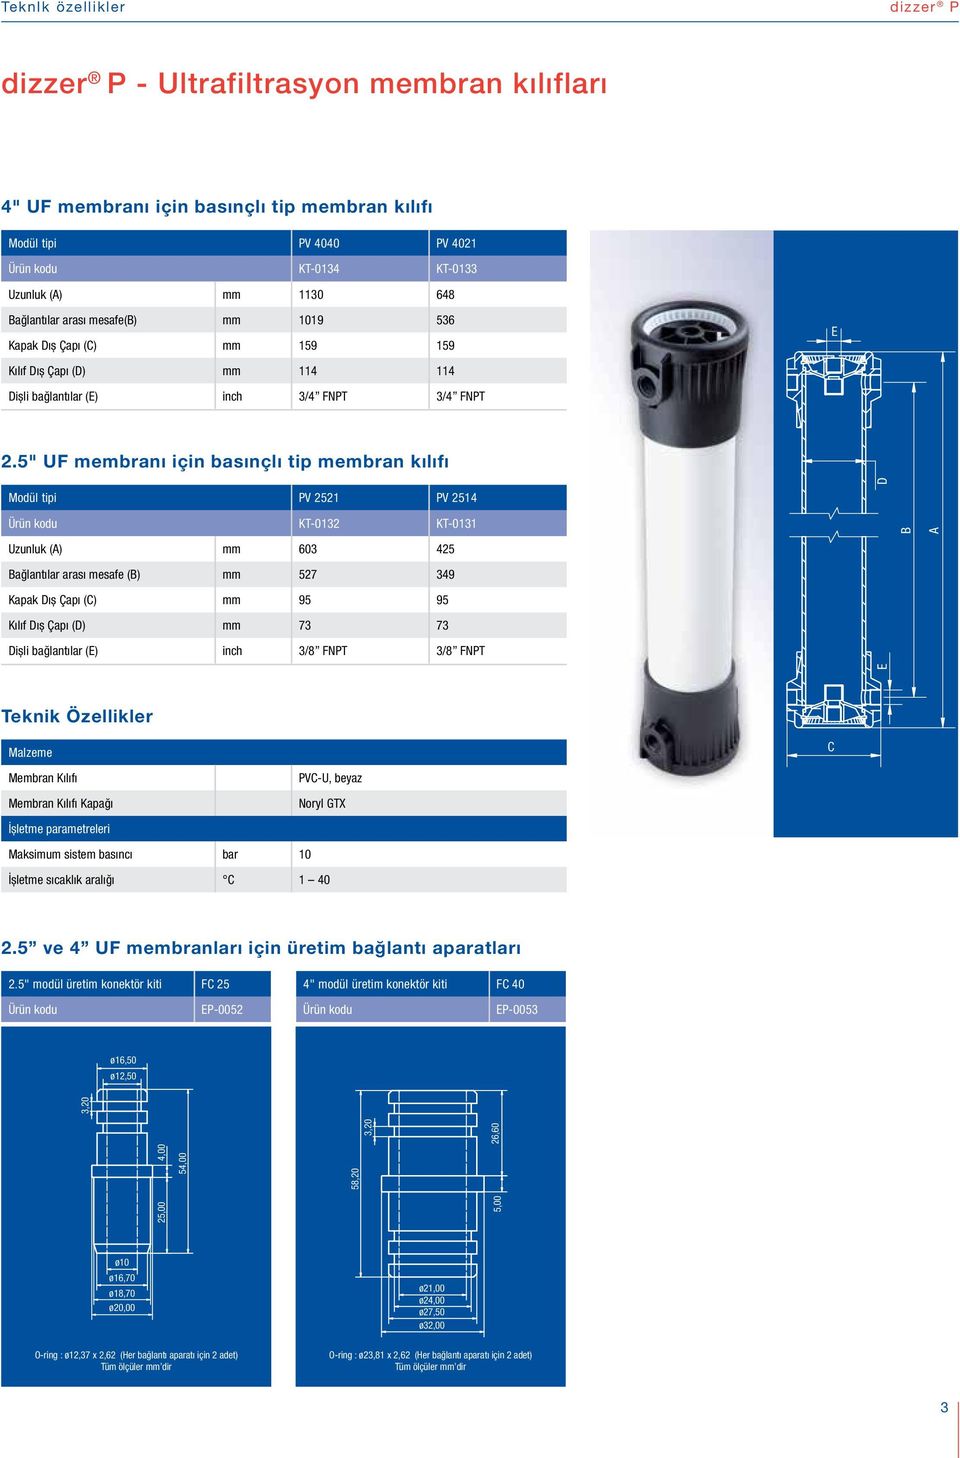 5" UF membranı için basınçlı tip membran kılıfı Modül tipi PV 2521 PV 2514 D Ürün kodu KT-0132 KT-0131 Uzunluk (A) mm 603 425 Bağlantılar arası mesafe (B) mm 527 349 Kapak Dış Çapı (C) mm 95 95 Kılıf